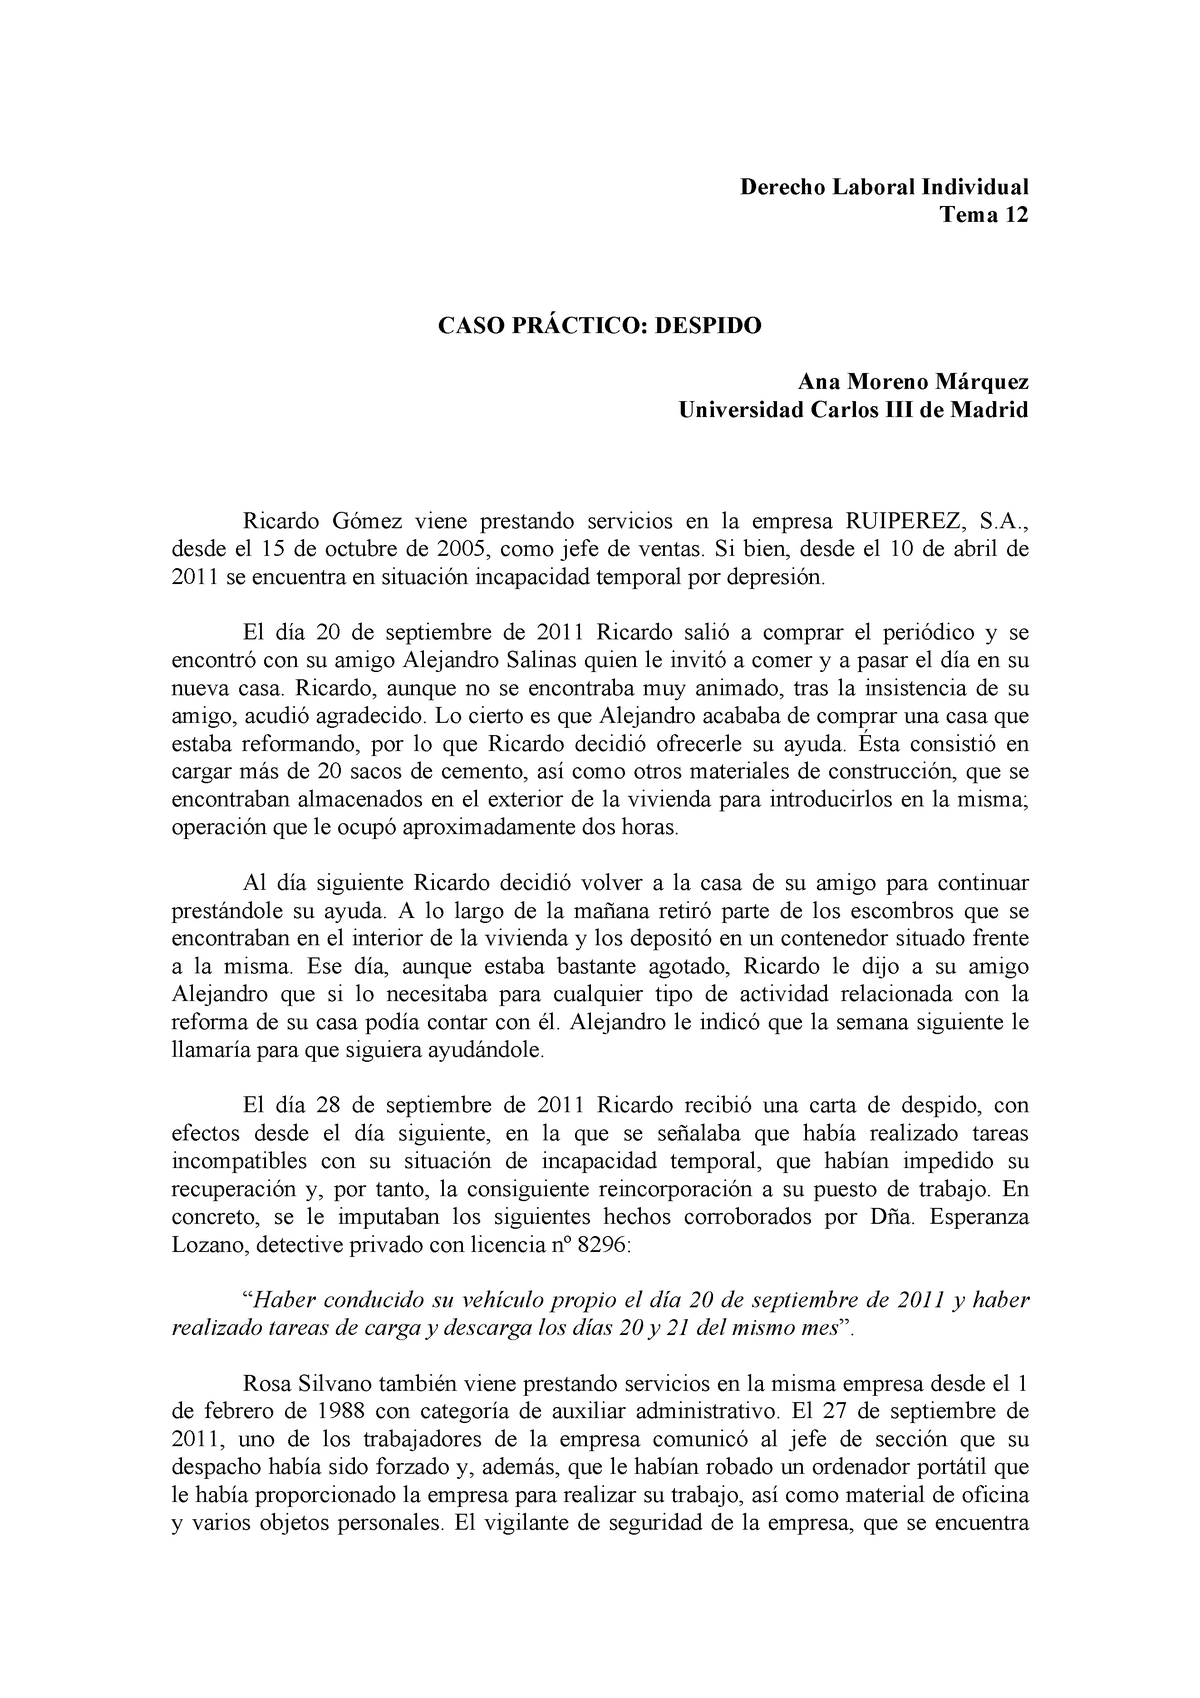 Caso Practico Despido Derecho Laboral Individual Tema 12 Caso PrÁctico Despido Ana Moreno 8232